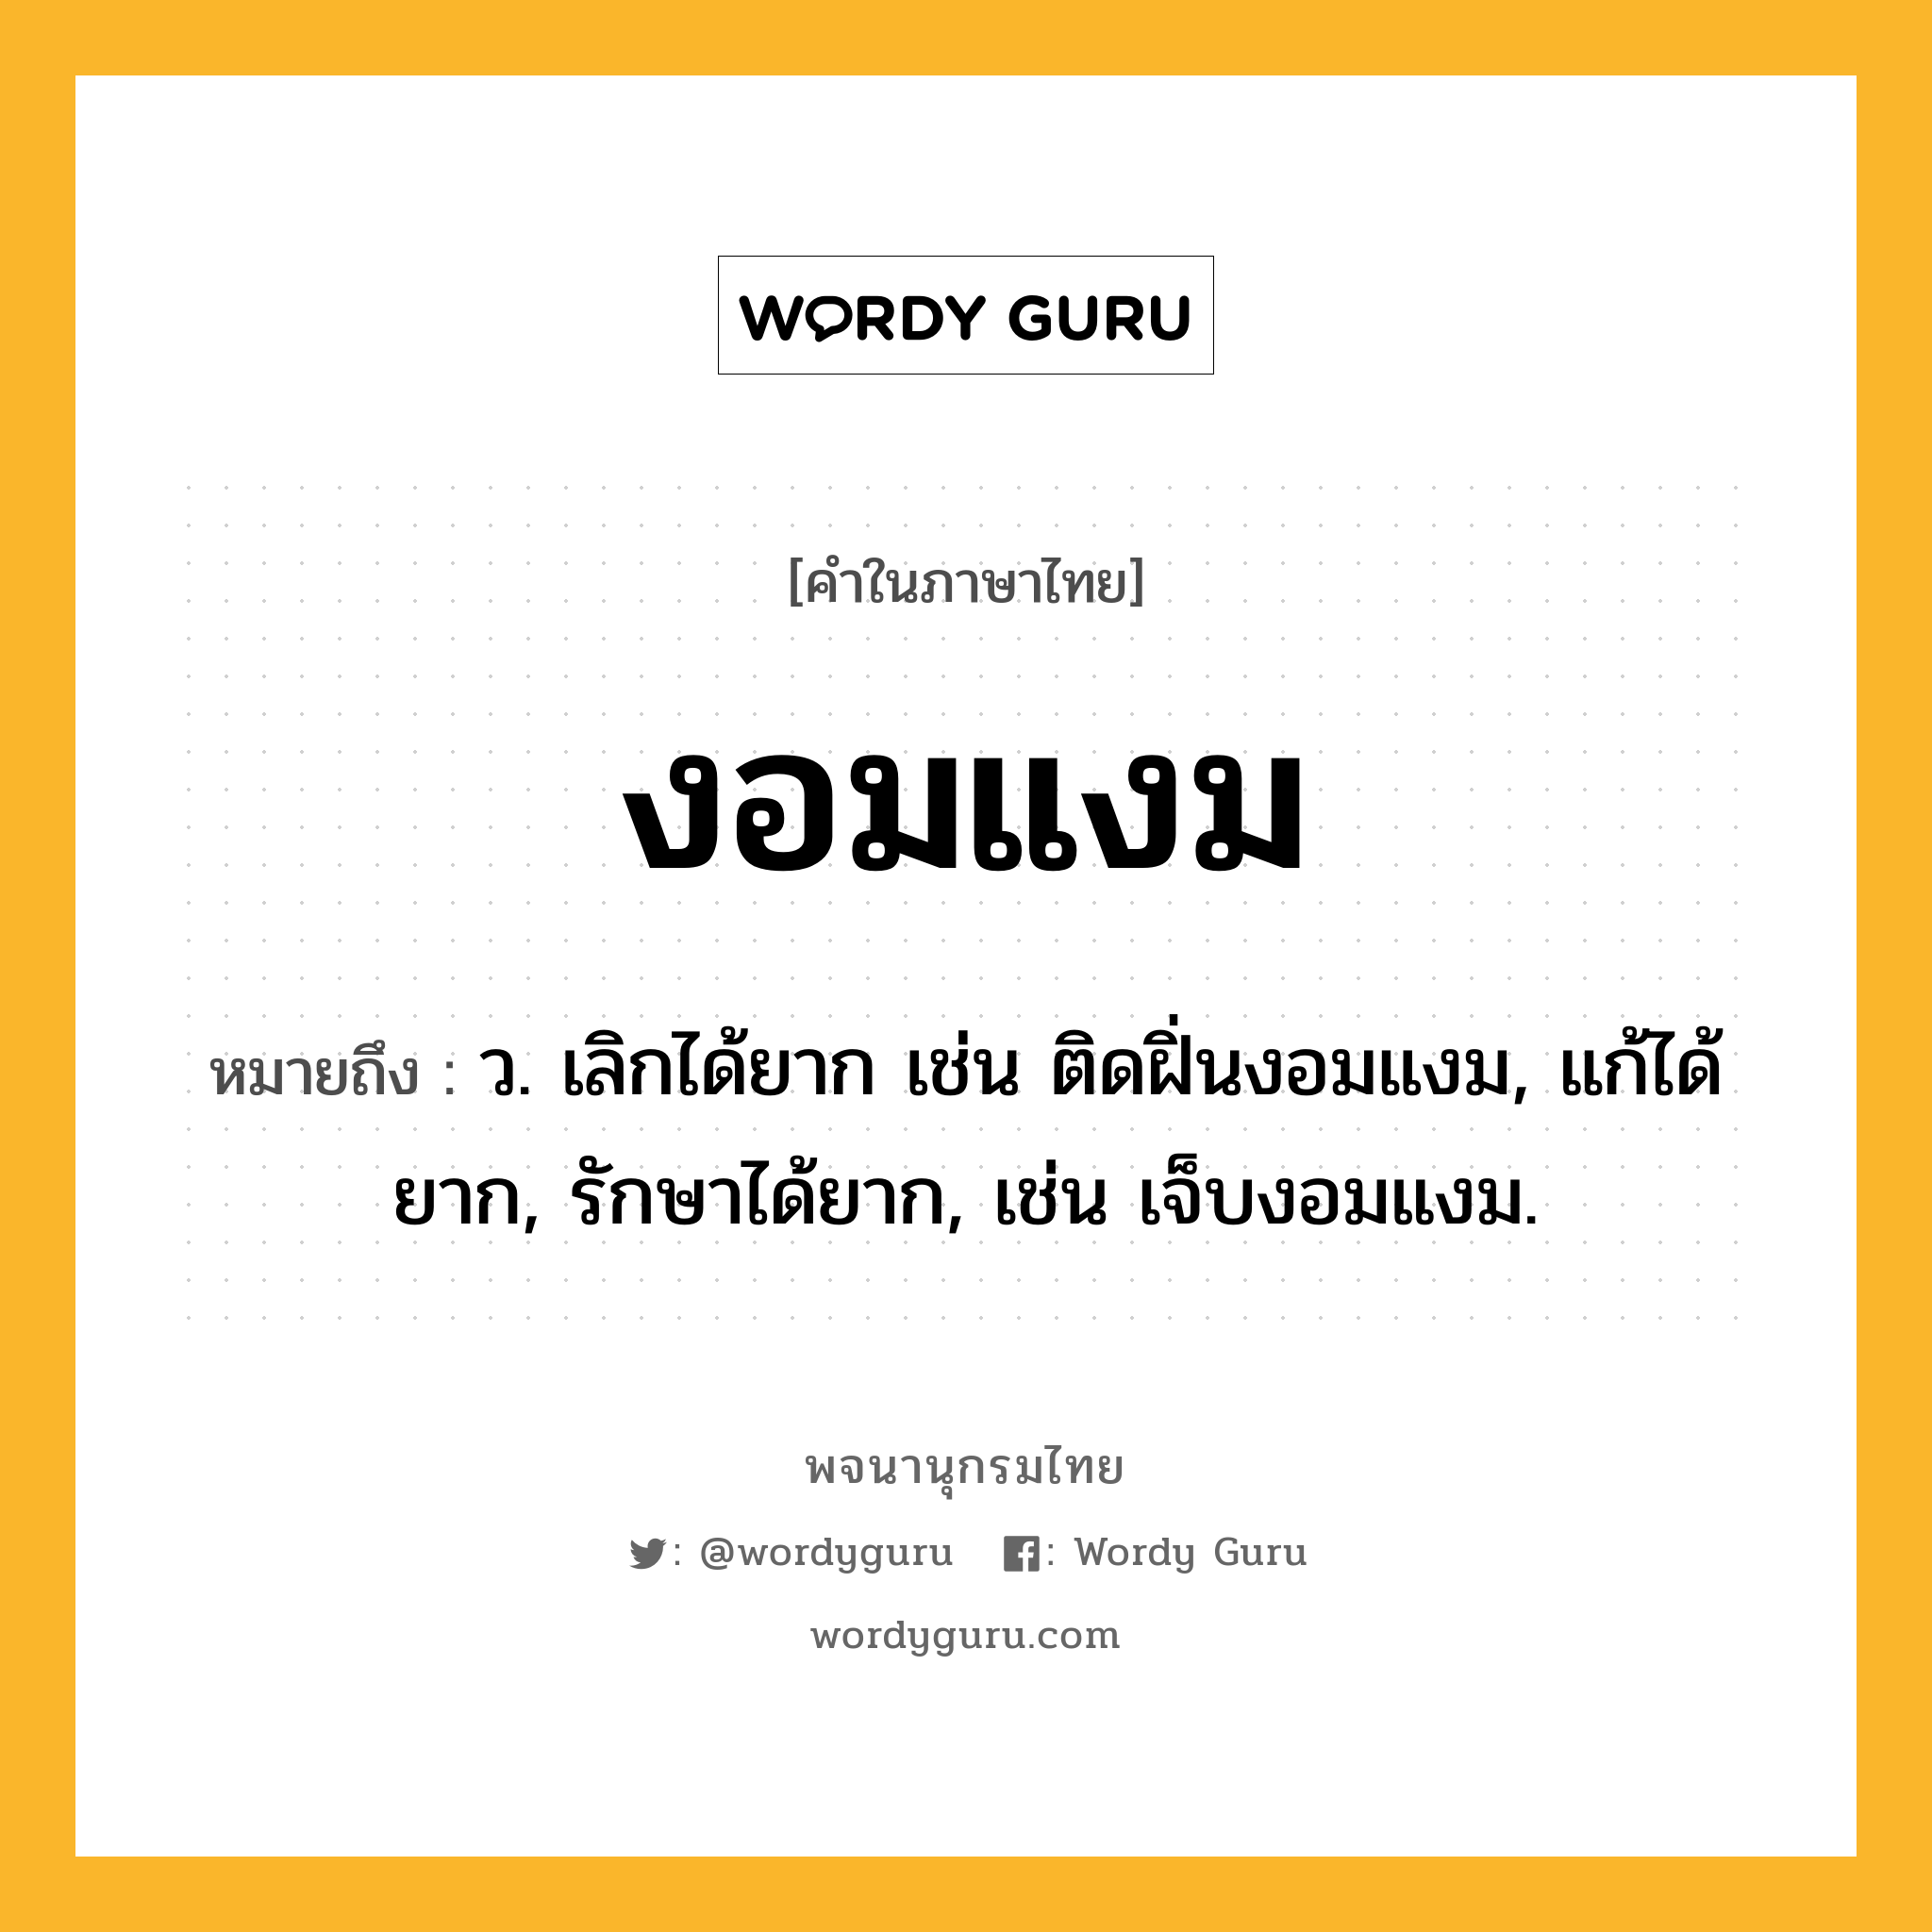 งอมแงม ความหมาย หมายถึงอะไร?, คำในภาษาไทย งอมแงม หมายถึง ว. เลิกได้ยาก เช่น ติดฝิ่นงอมแงม, แก้ได้ยาก, รักษาได้ยาก, เช่น เจ็บงอมแงม.